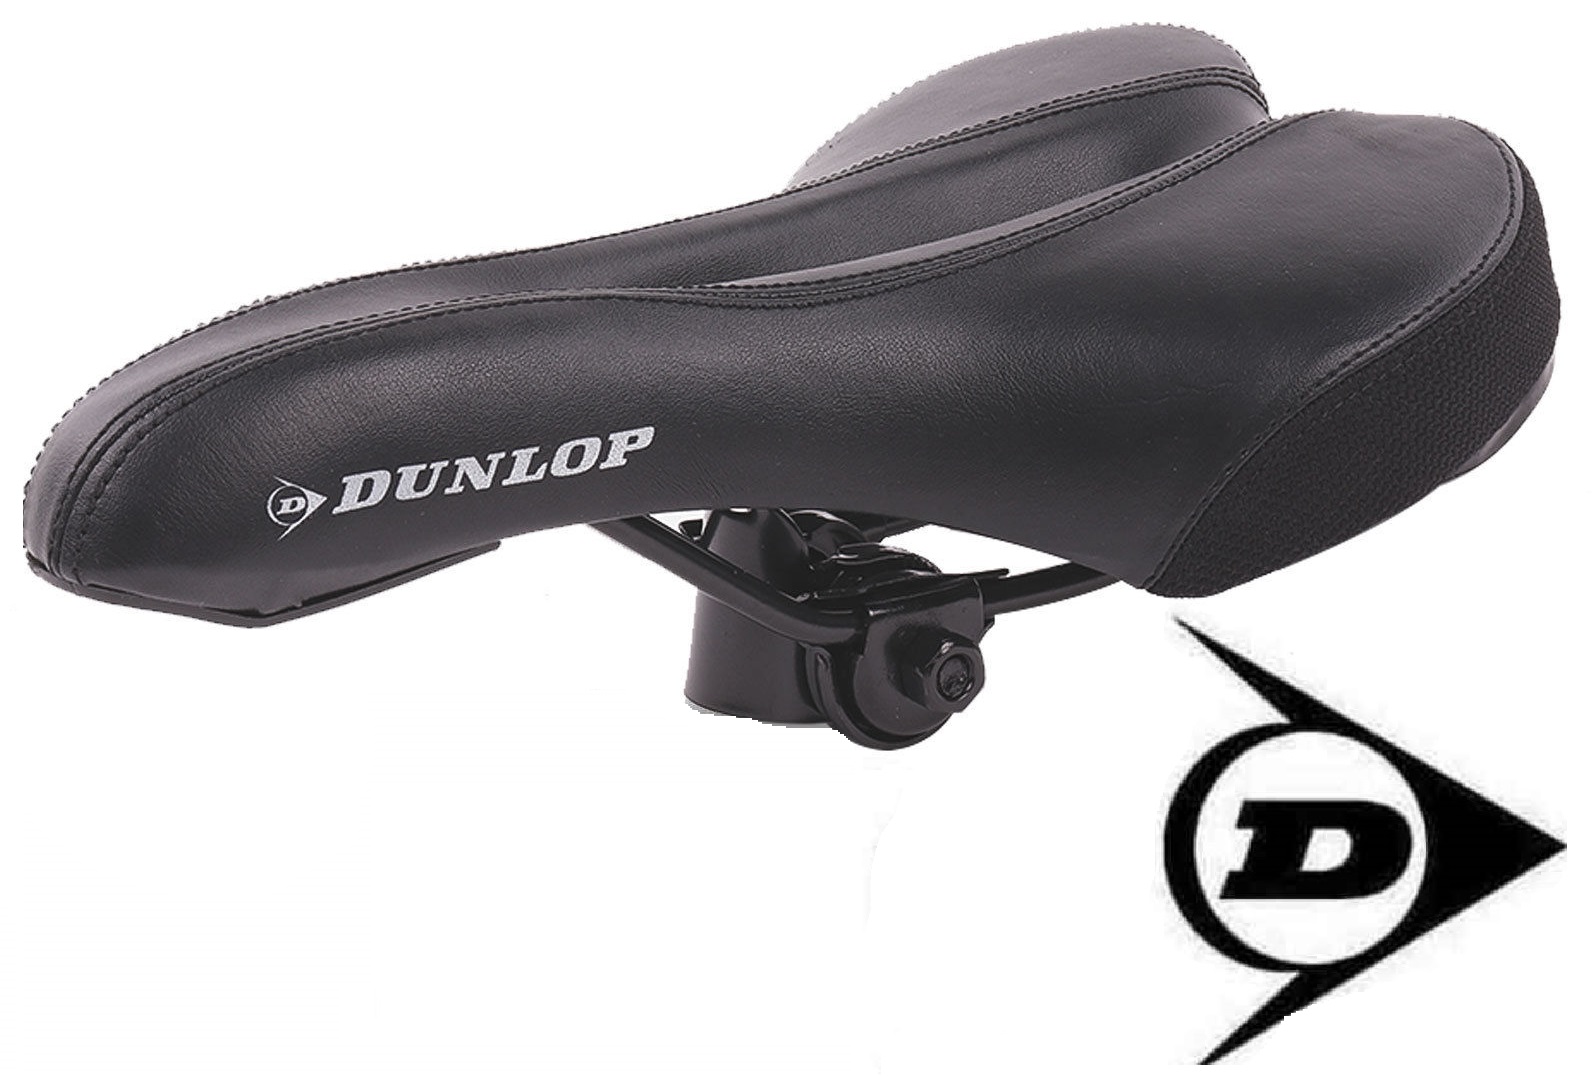 Dunlop FGM19 Mountainbike MTB Fahrrad Sattel, Damen und Herren Fahrradsattel